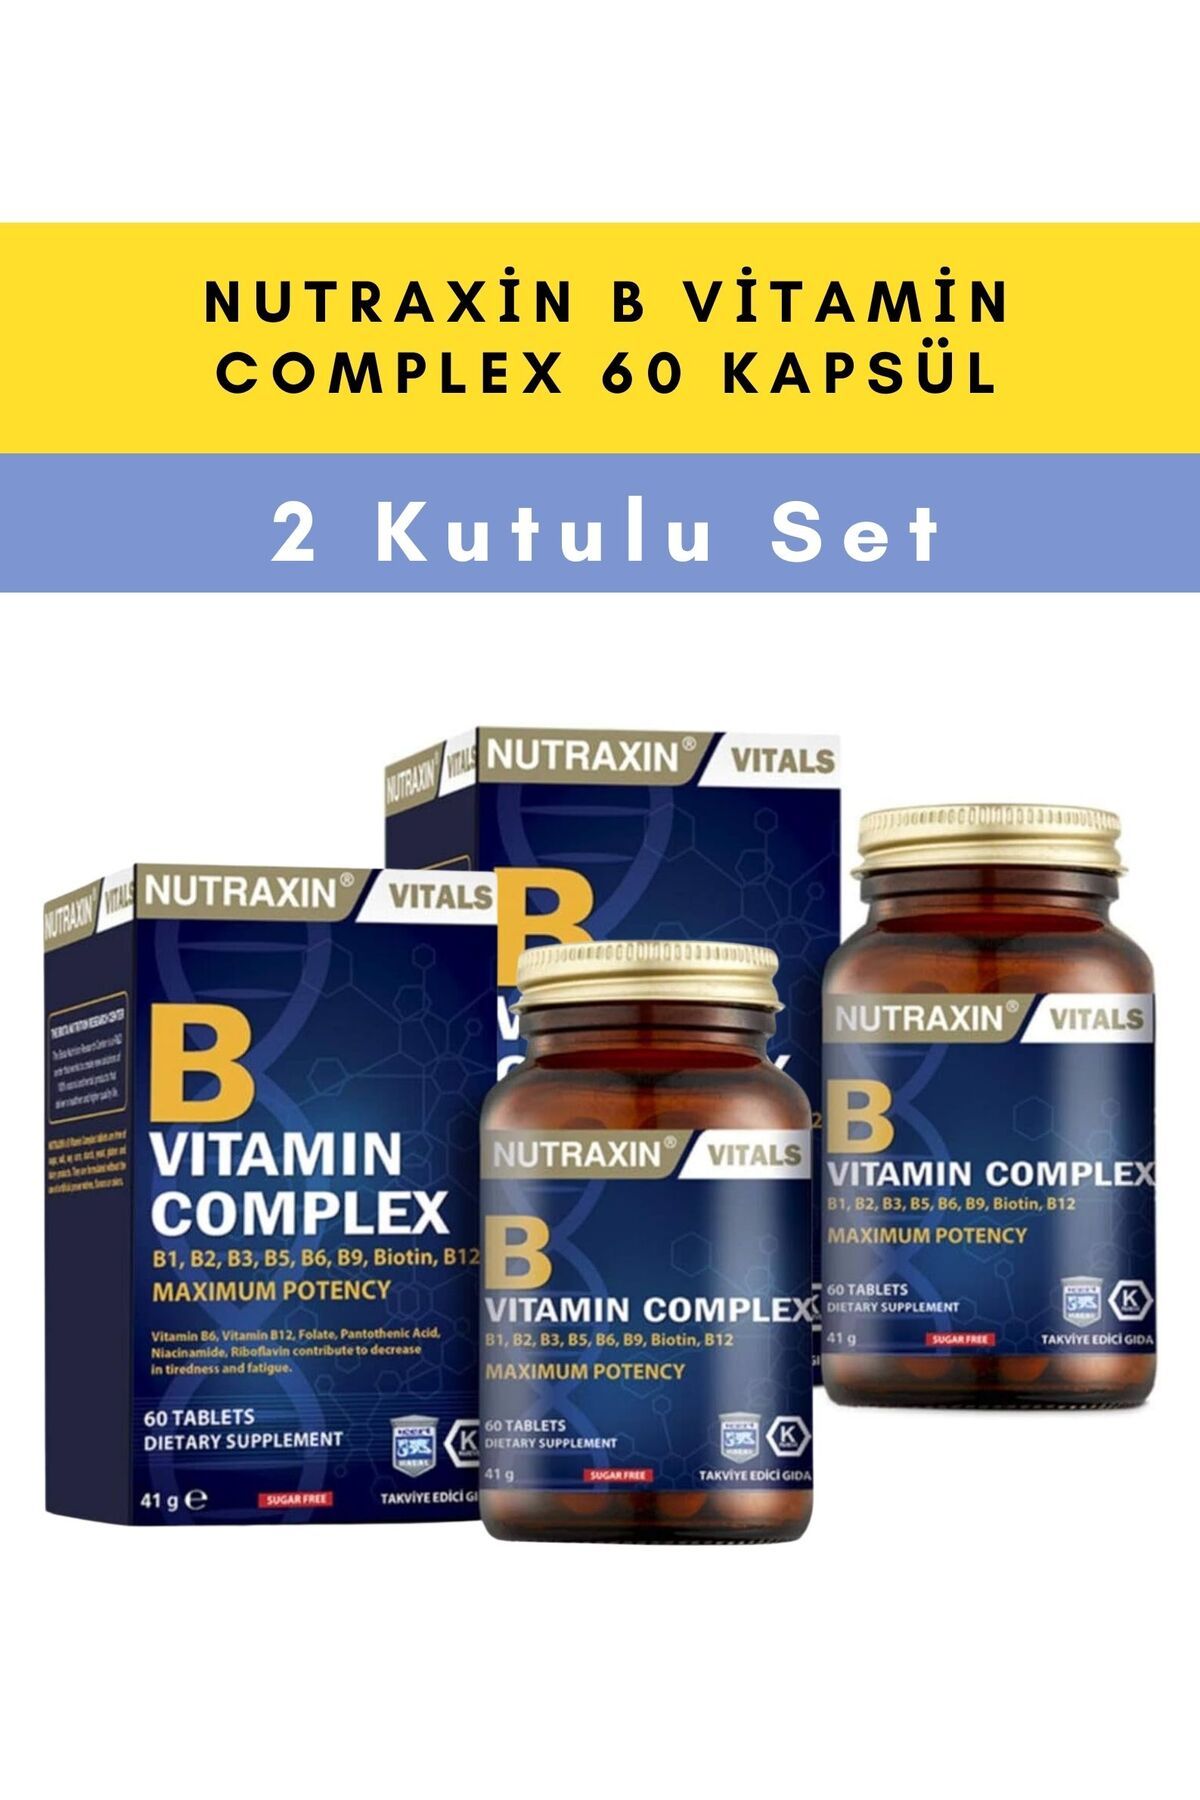 Nutraxin B Vitamin Complex 60 Kapsül - 2 KUTULU SET